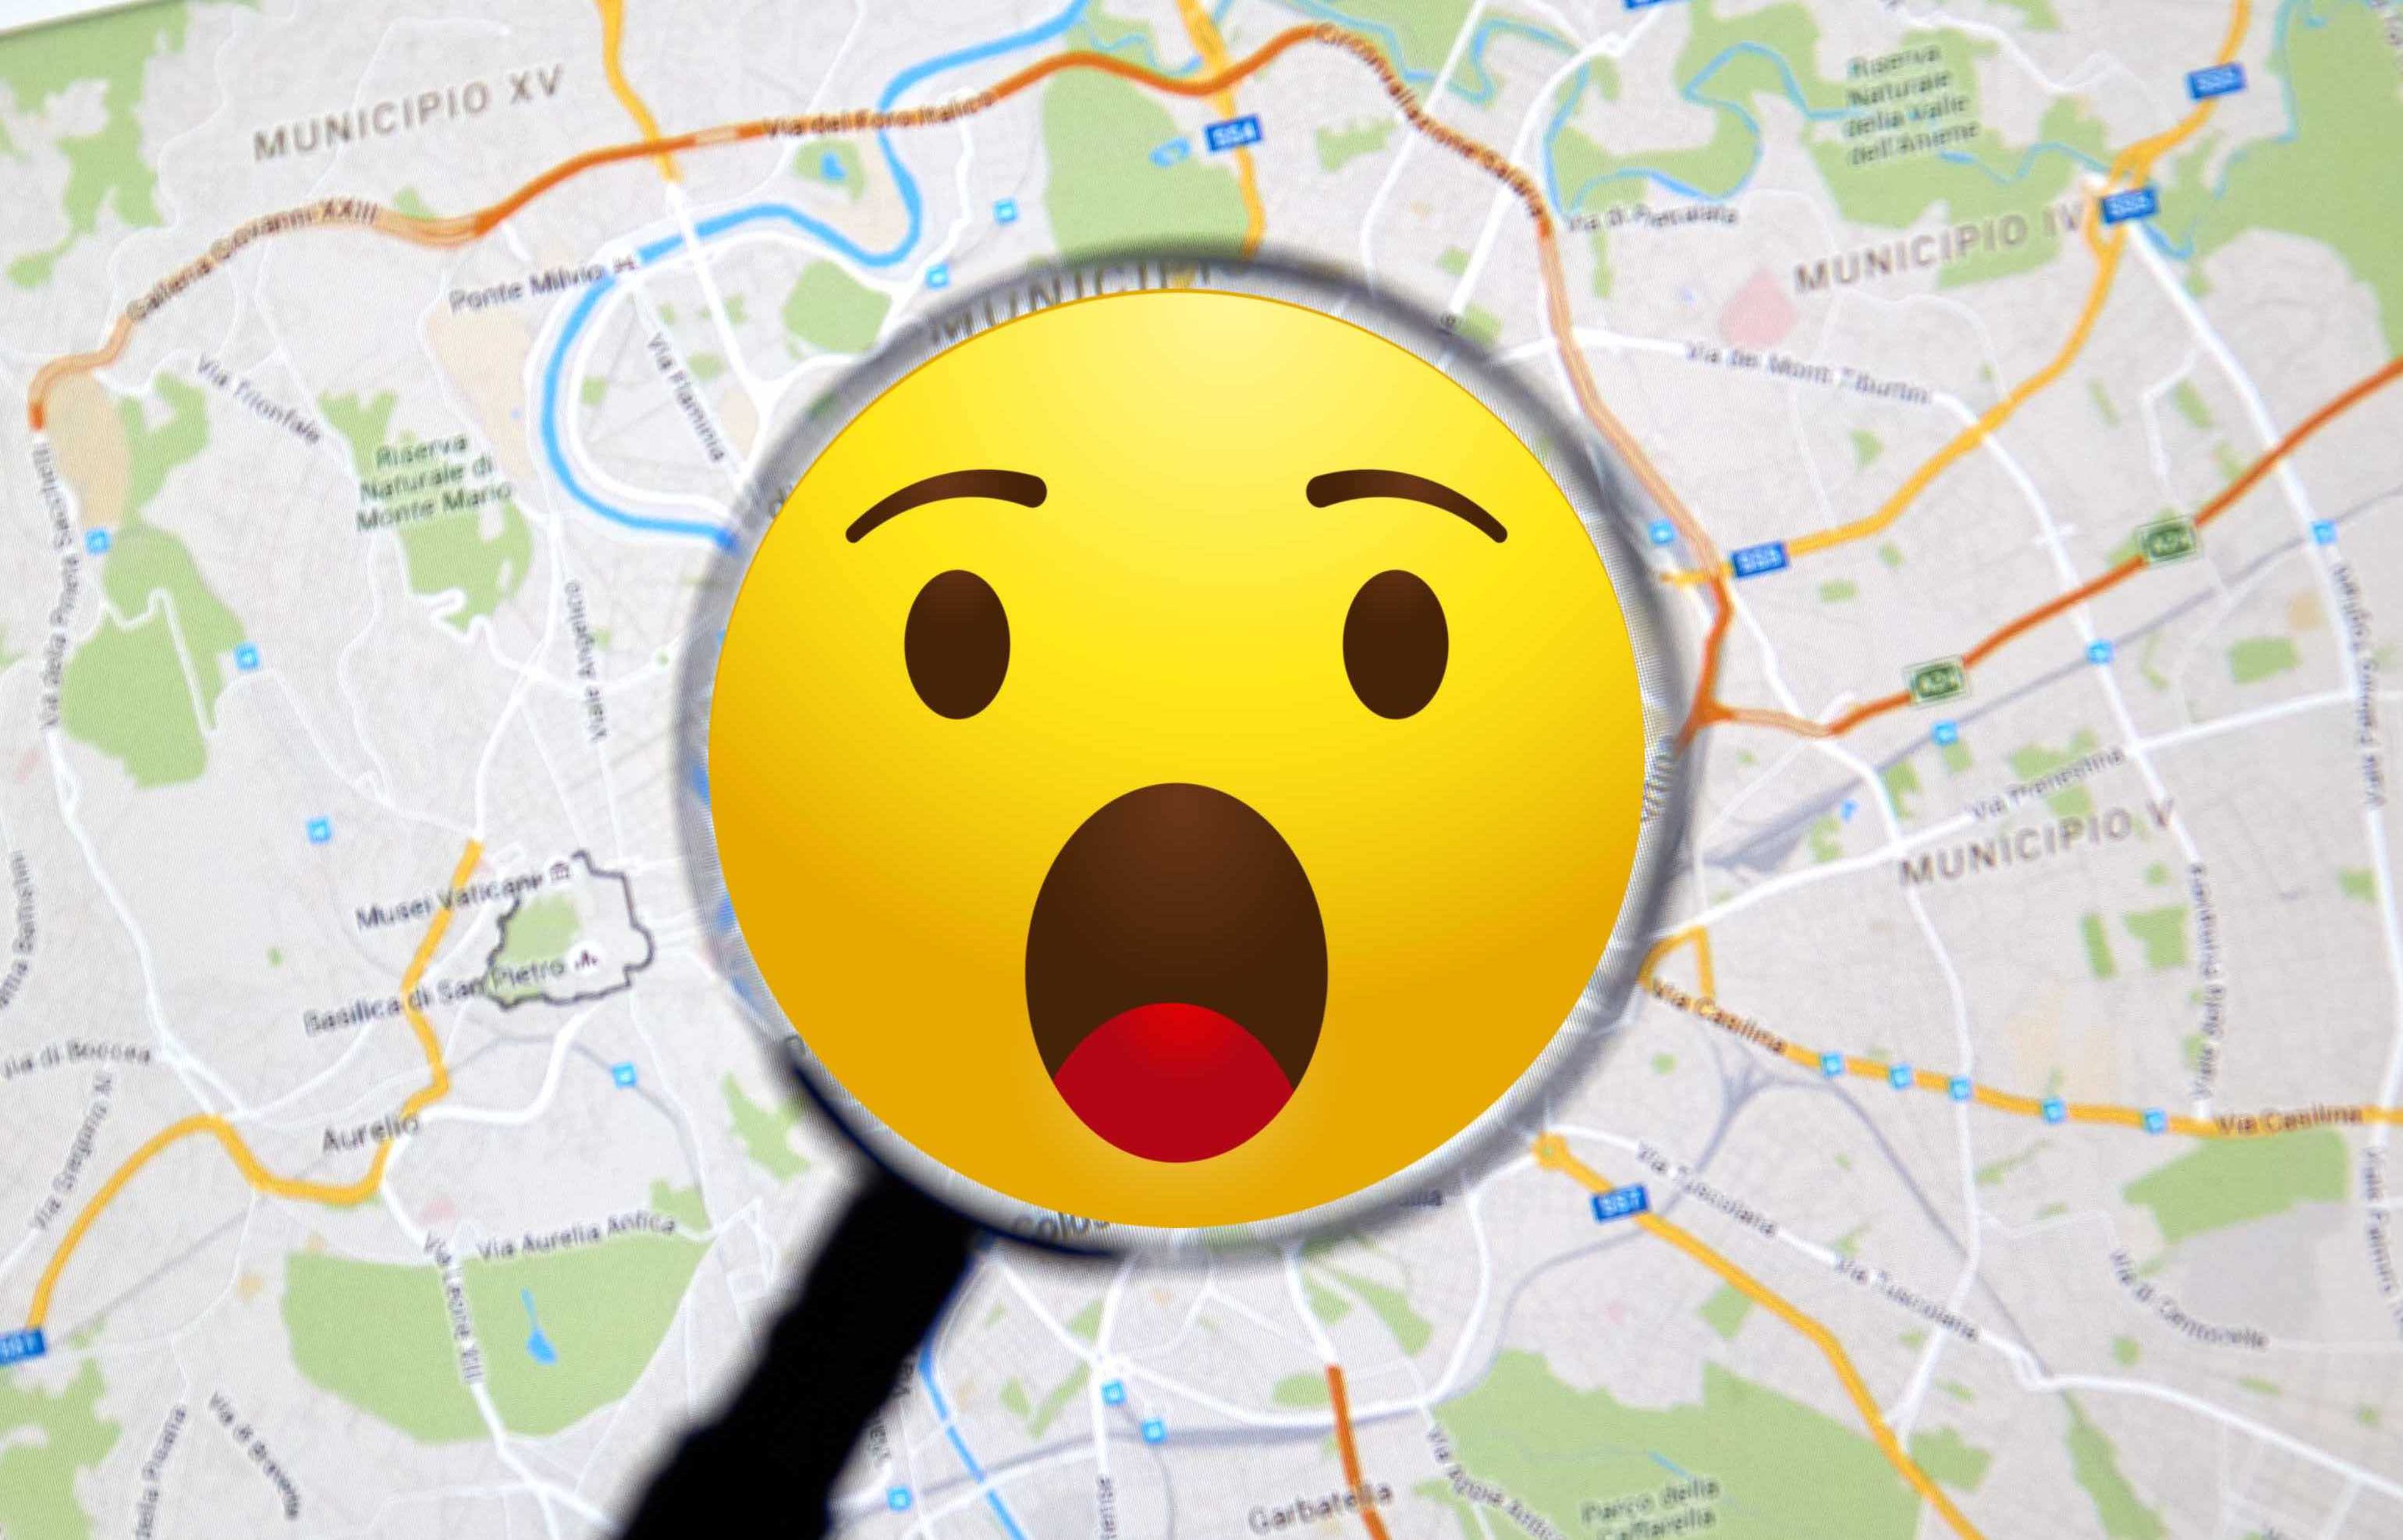 Mapa de Google Maps con un emoji gigante